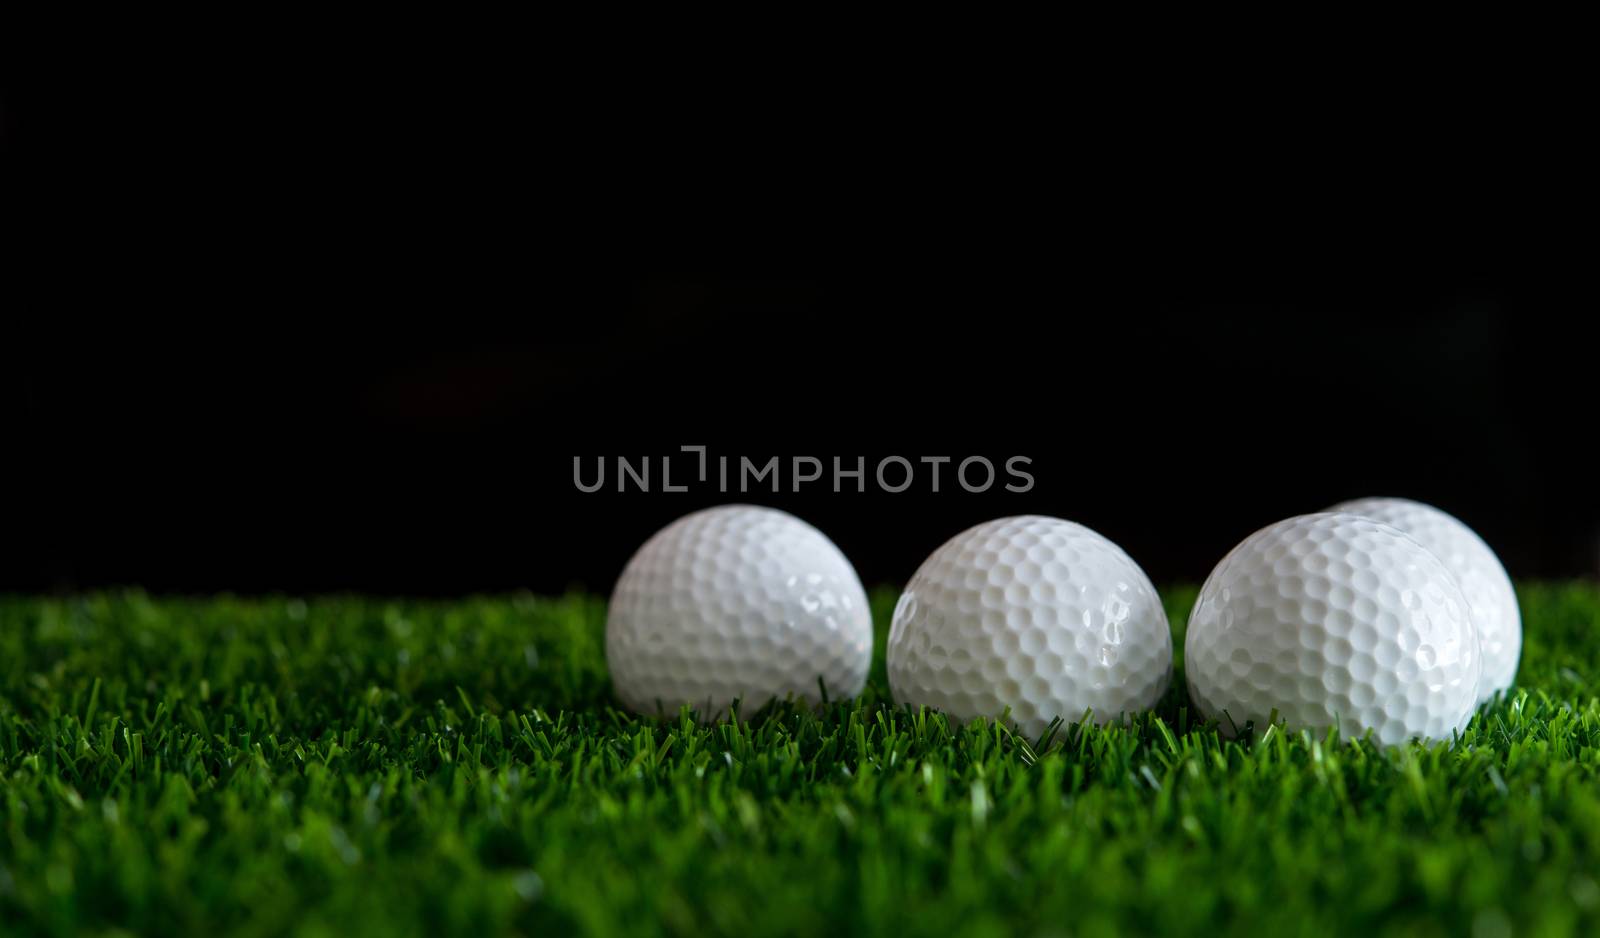 golf ball on green grass by antpkr